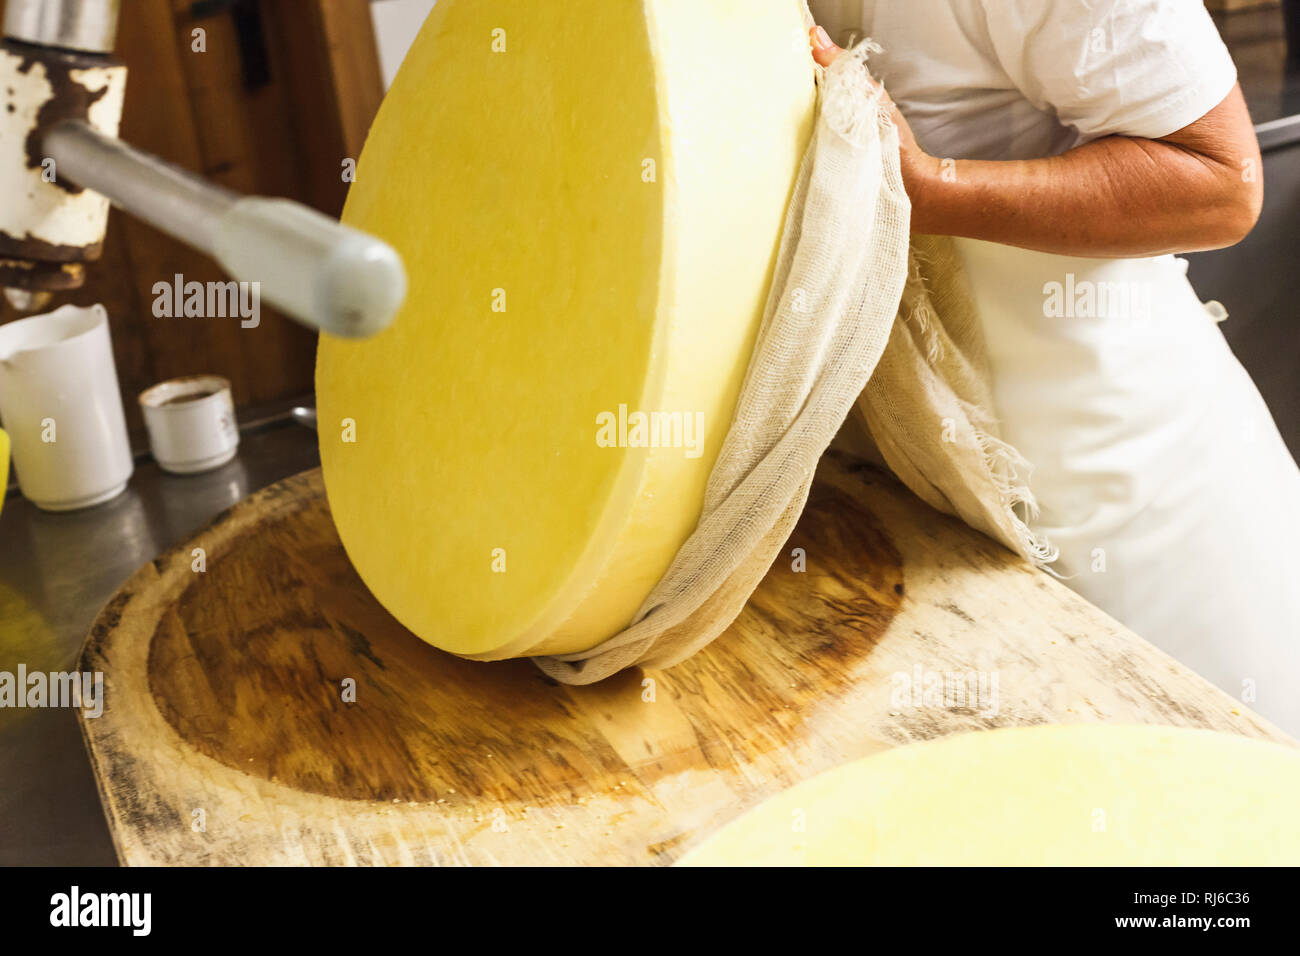 Die Sennerin verarbeitet frische Milch zu würzigem Alm-Käse, Von der Milch zum Käse, Stock Photo